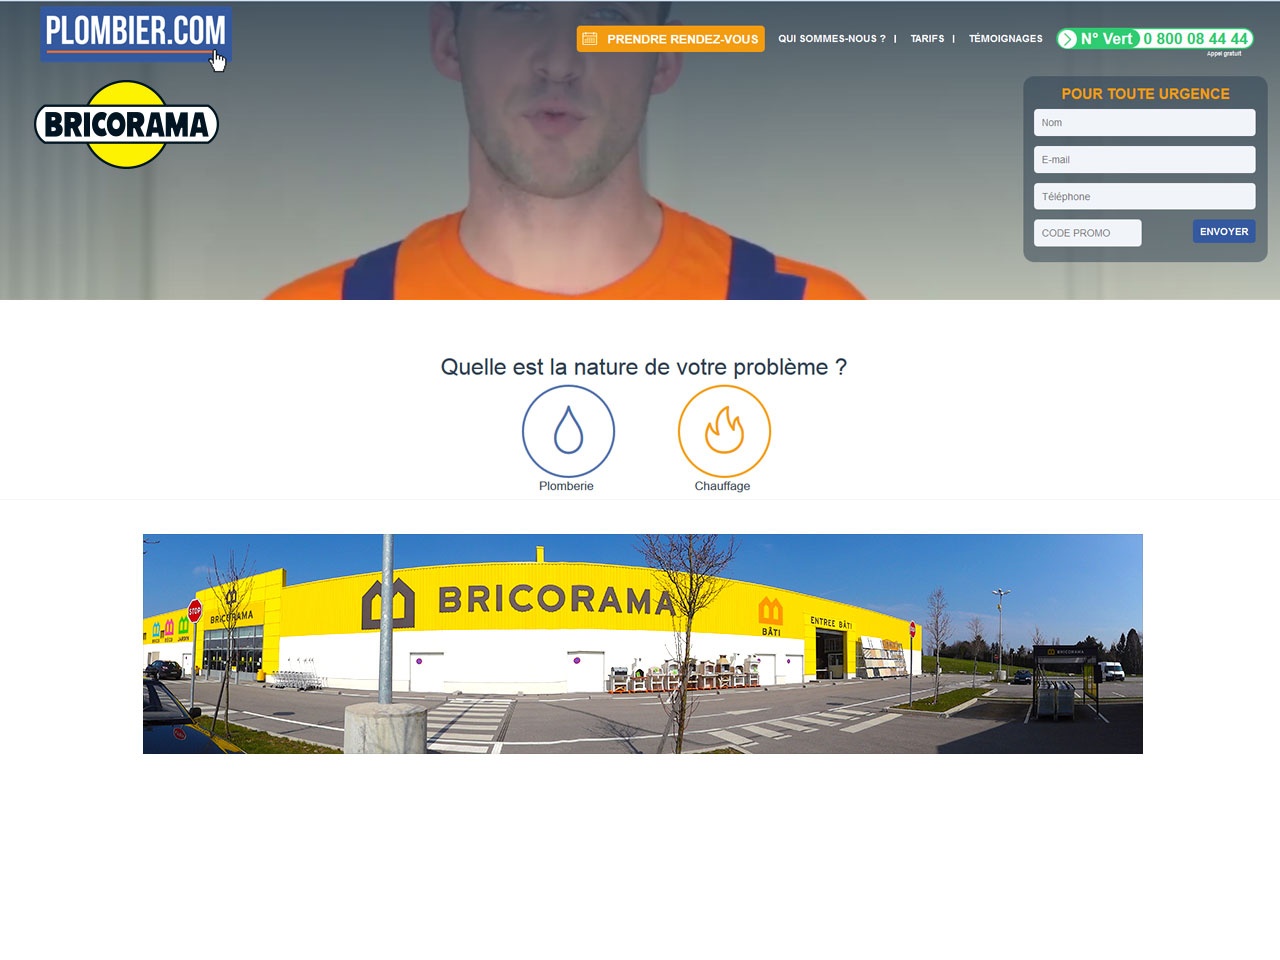 BRICORAMA lance un nouveau service avec Plombier.com